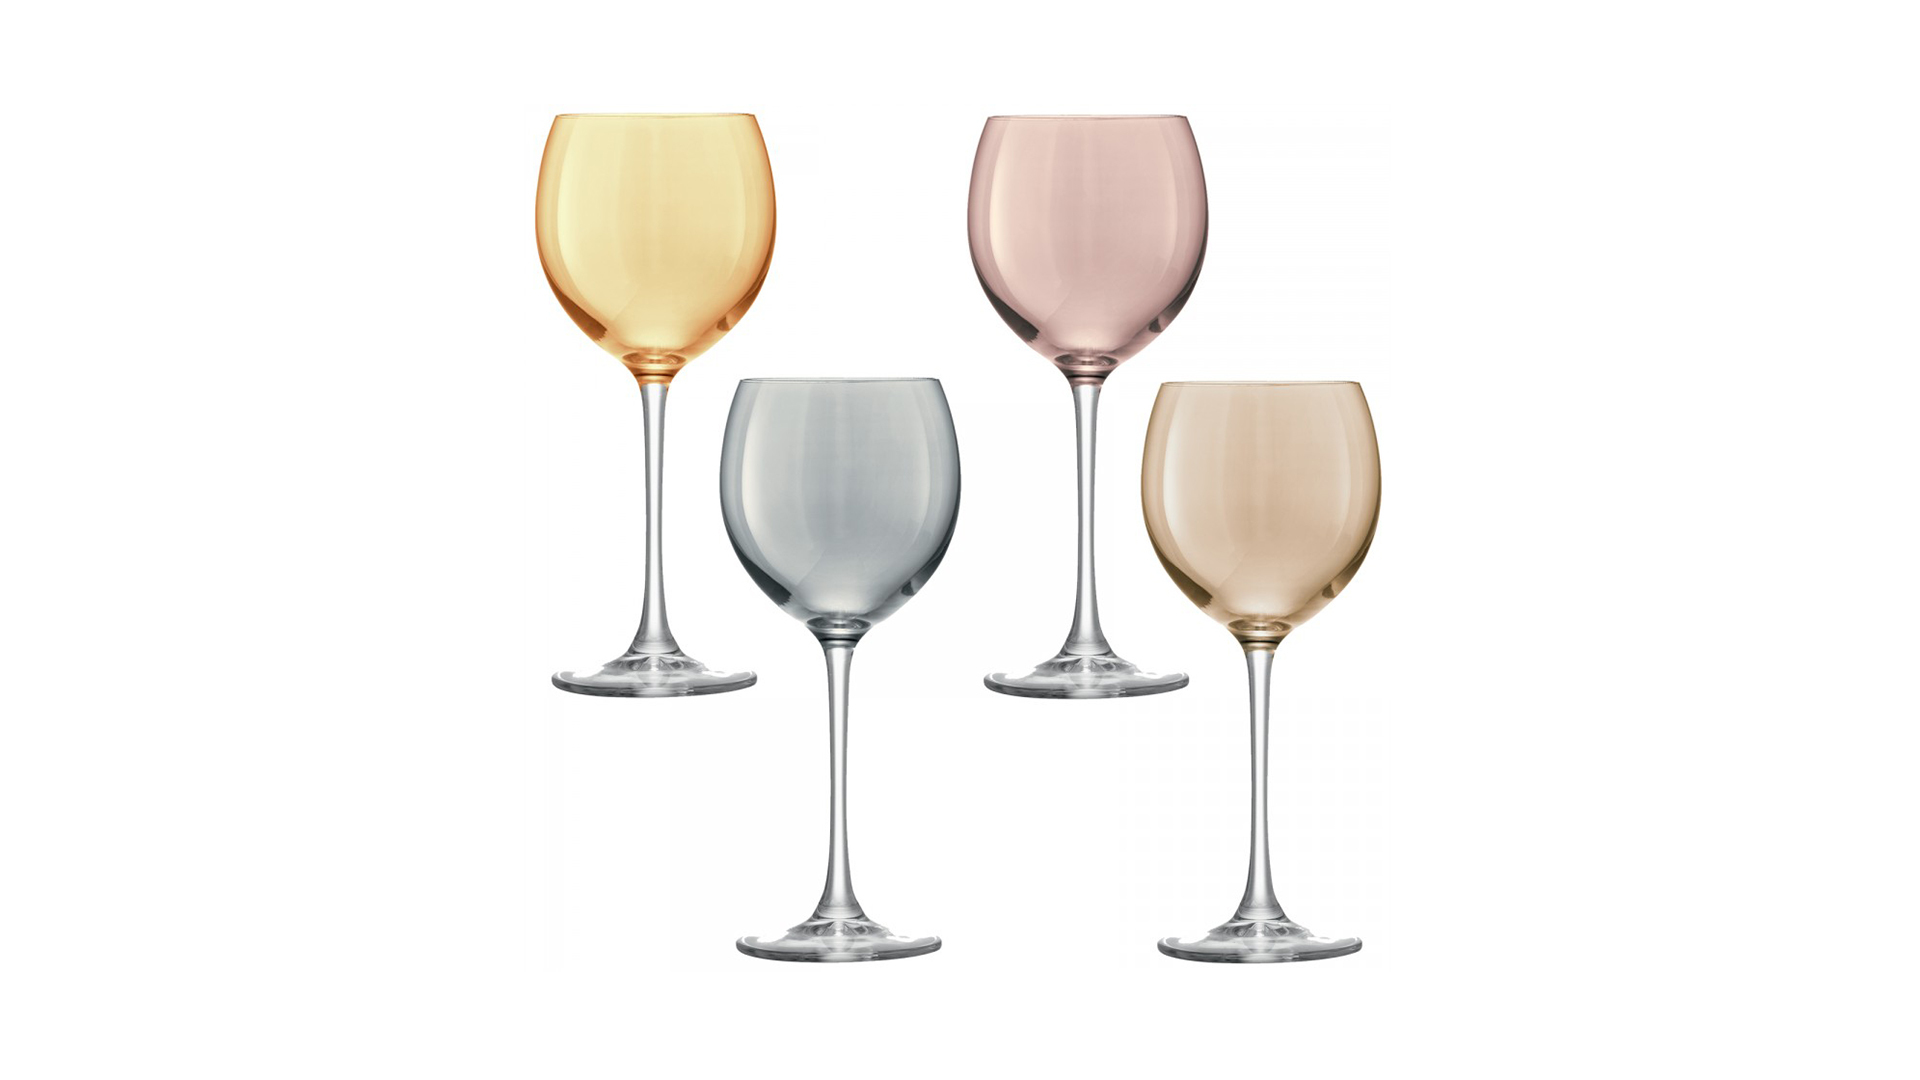 Набор разноцветных бокалов для вина LSA International Polka 400 мл, 4 шт, стекло